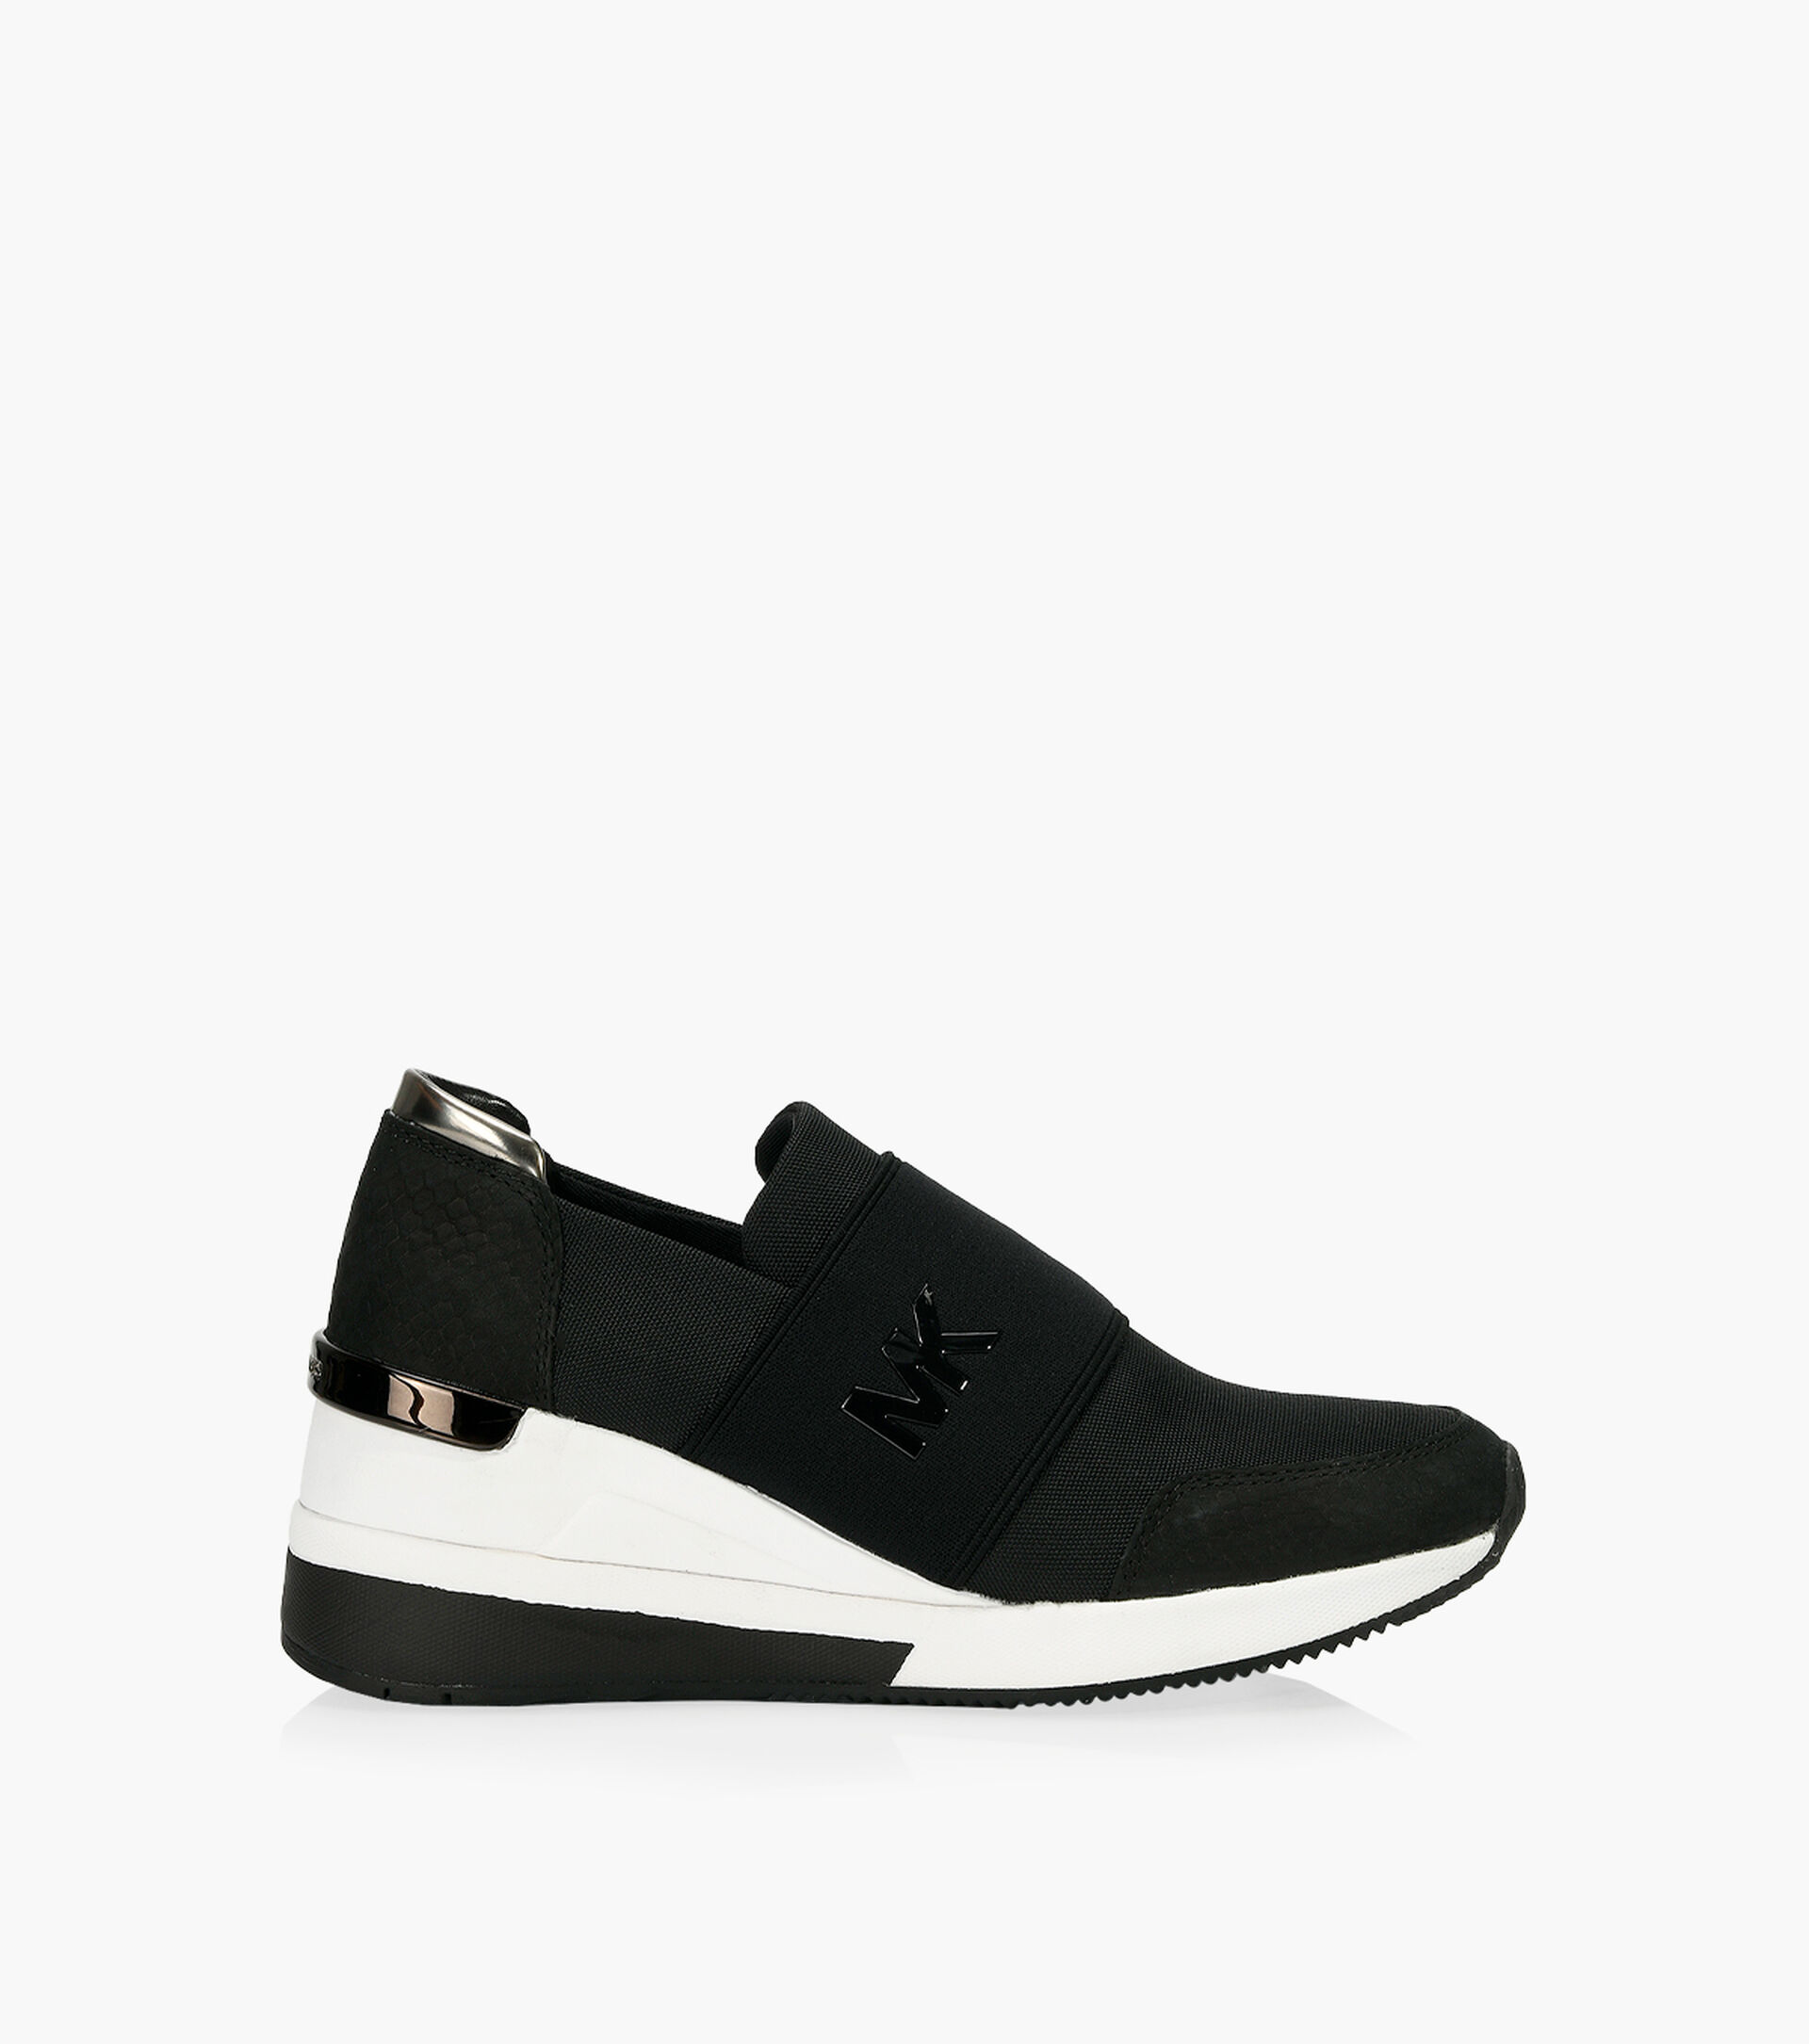 MICHAEL MICHAEL KORS FELIX TRAINER - Black Leather | Browns Shoes